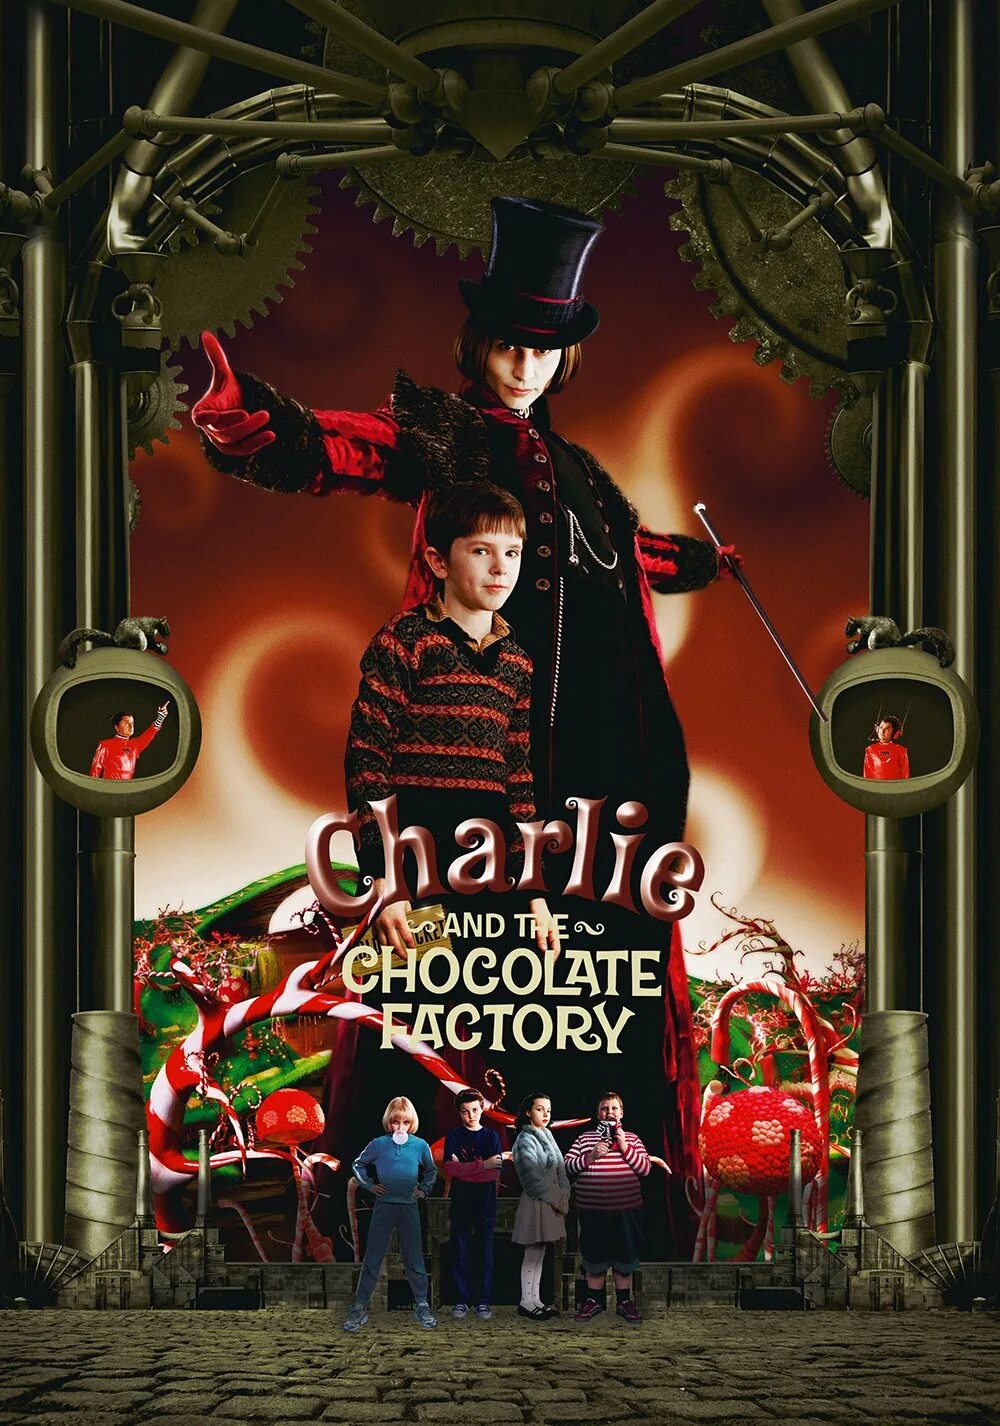 Сказка чарли и шоколадная фабрика. Чарли и шоколадная фабрика 2005. Charlie and the Chocolate Factory 2005 poster. Тим Бертон Чарли и шоколадная фабрика.